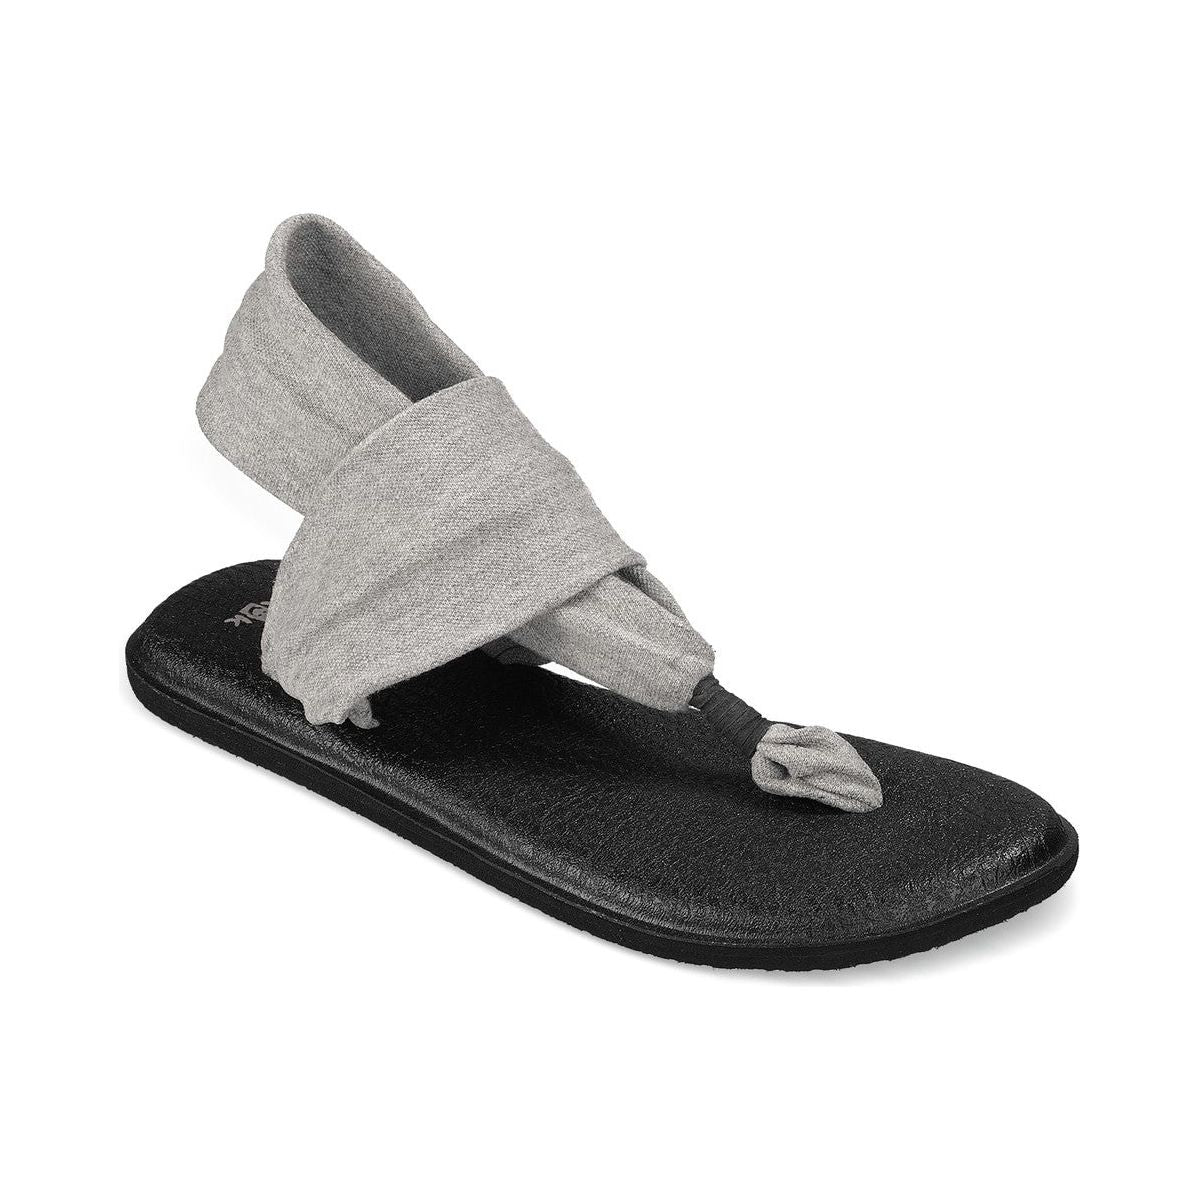 Sanuk black yoga mat thong Slingback sandals women's size 7